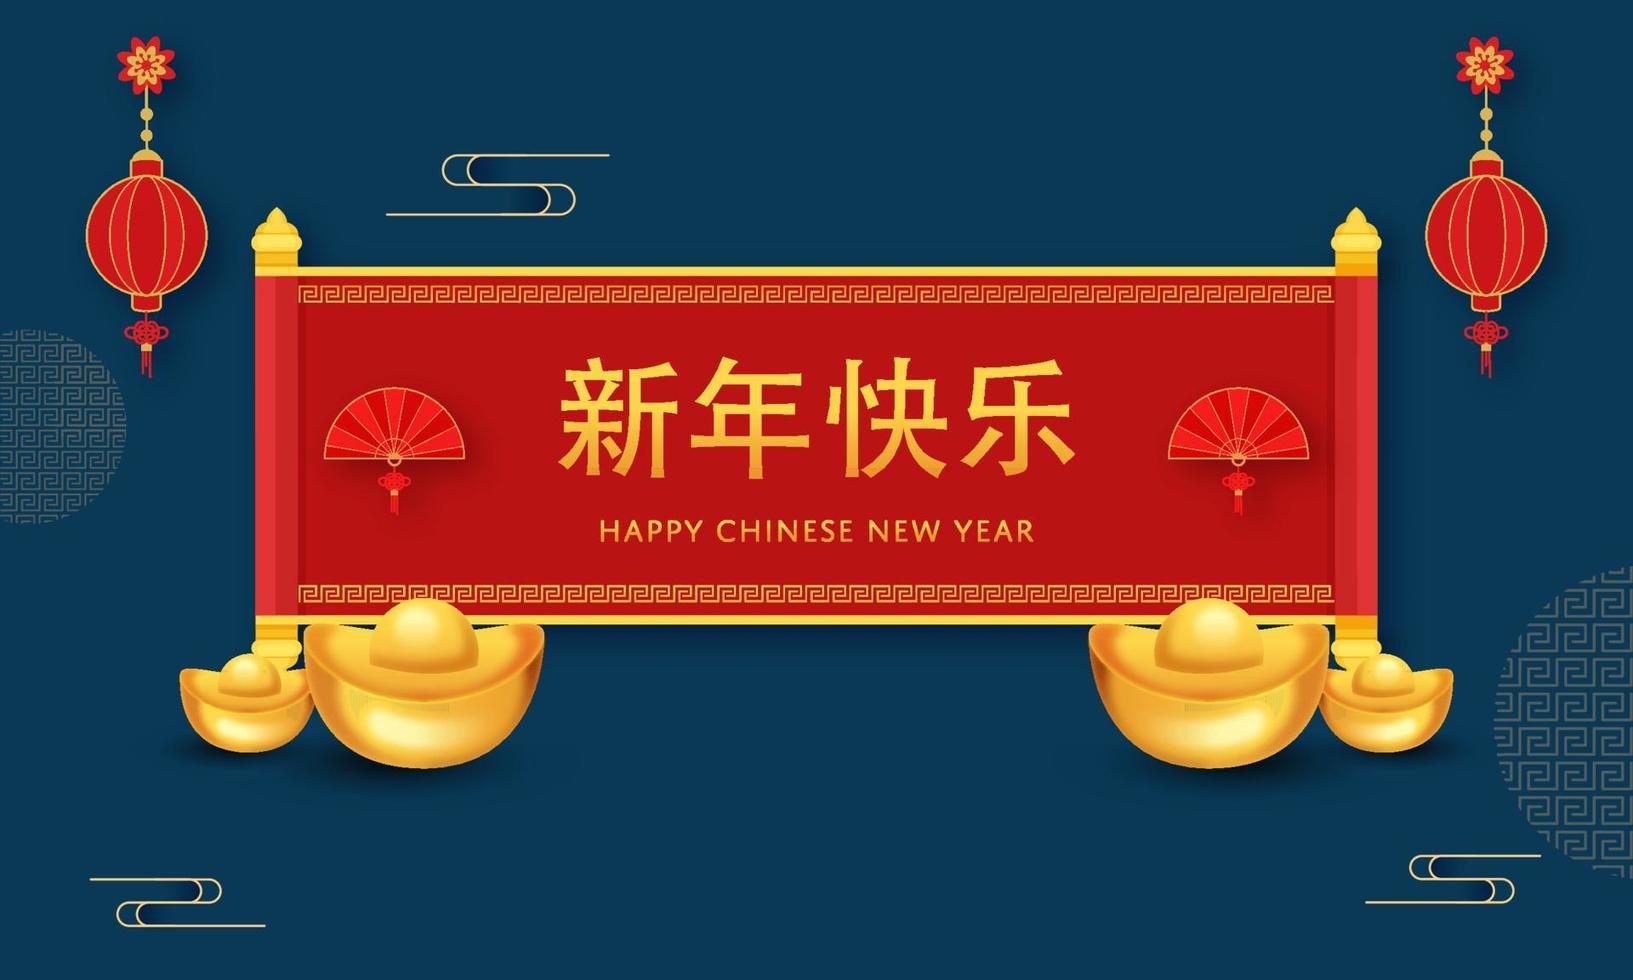 contento chino nuevo año mandarín texto terminado rojo papel Desplazarse con plegable aficionados, realista lingotes y linternas colgar en azul antecedentes. vector